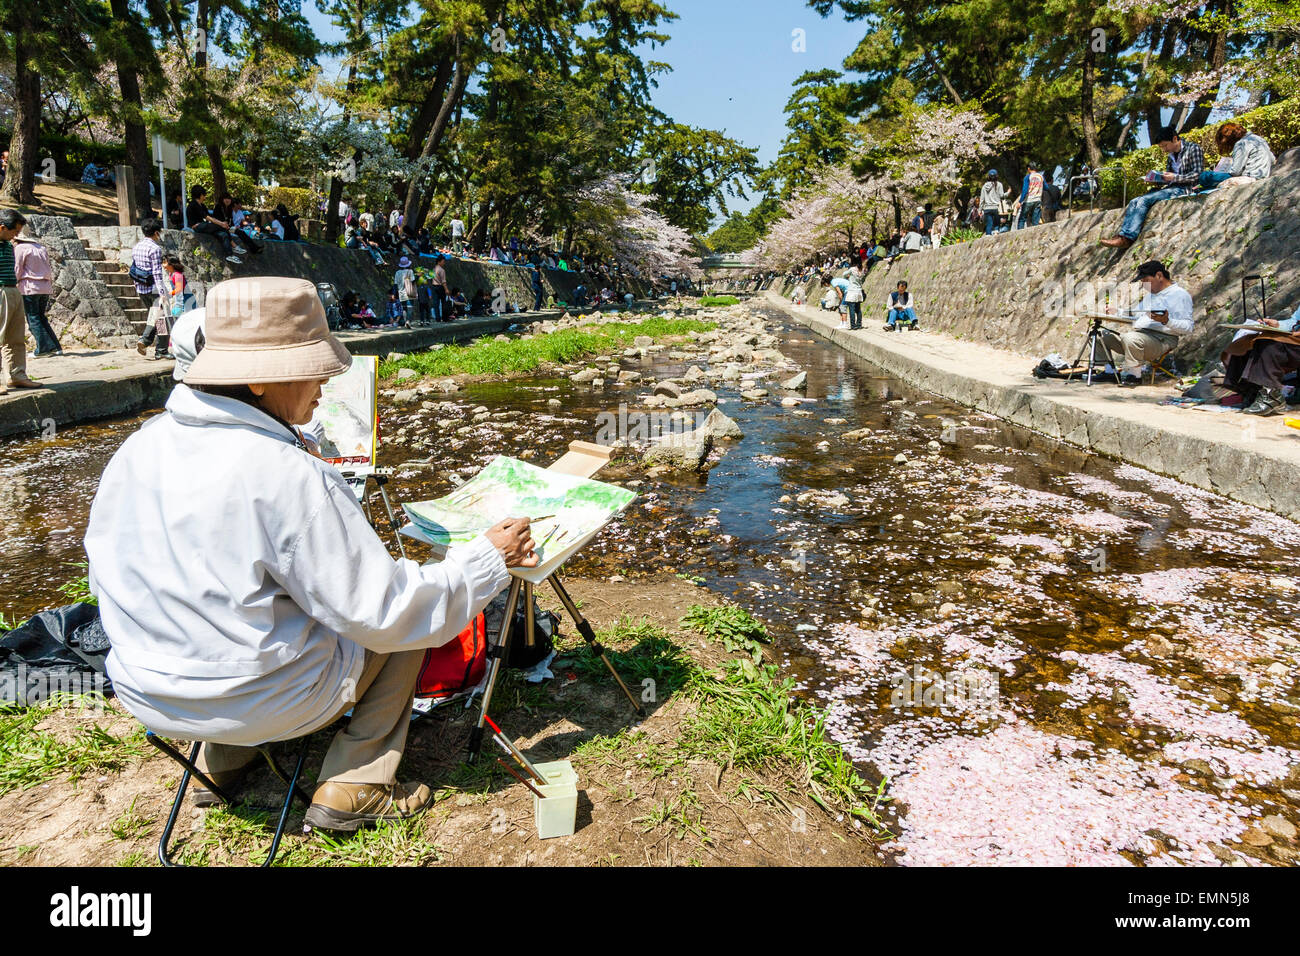 Homme senior assis sur une servante sur une petite île dans une rivière étroite au soleil vif pendant la saison des cerisiers en fleurs dans un endroit de beauté local. Banque D'Images